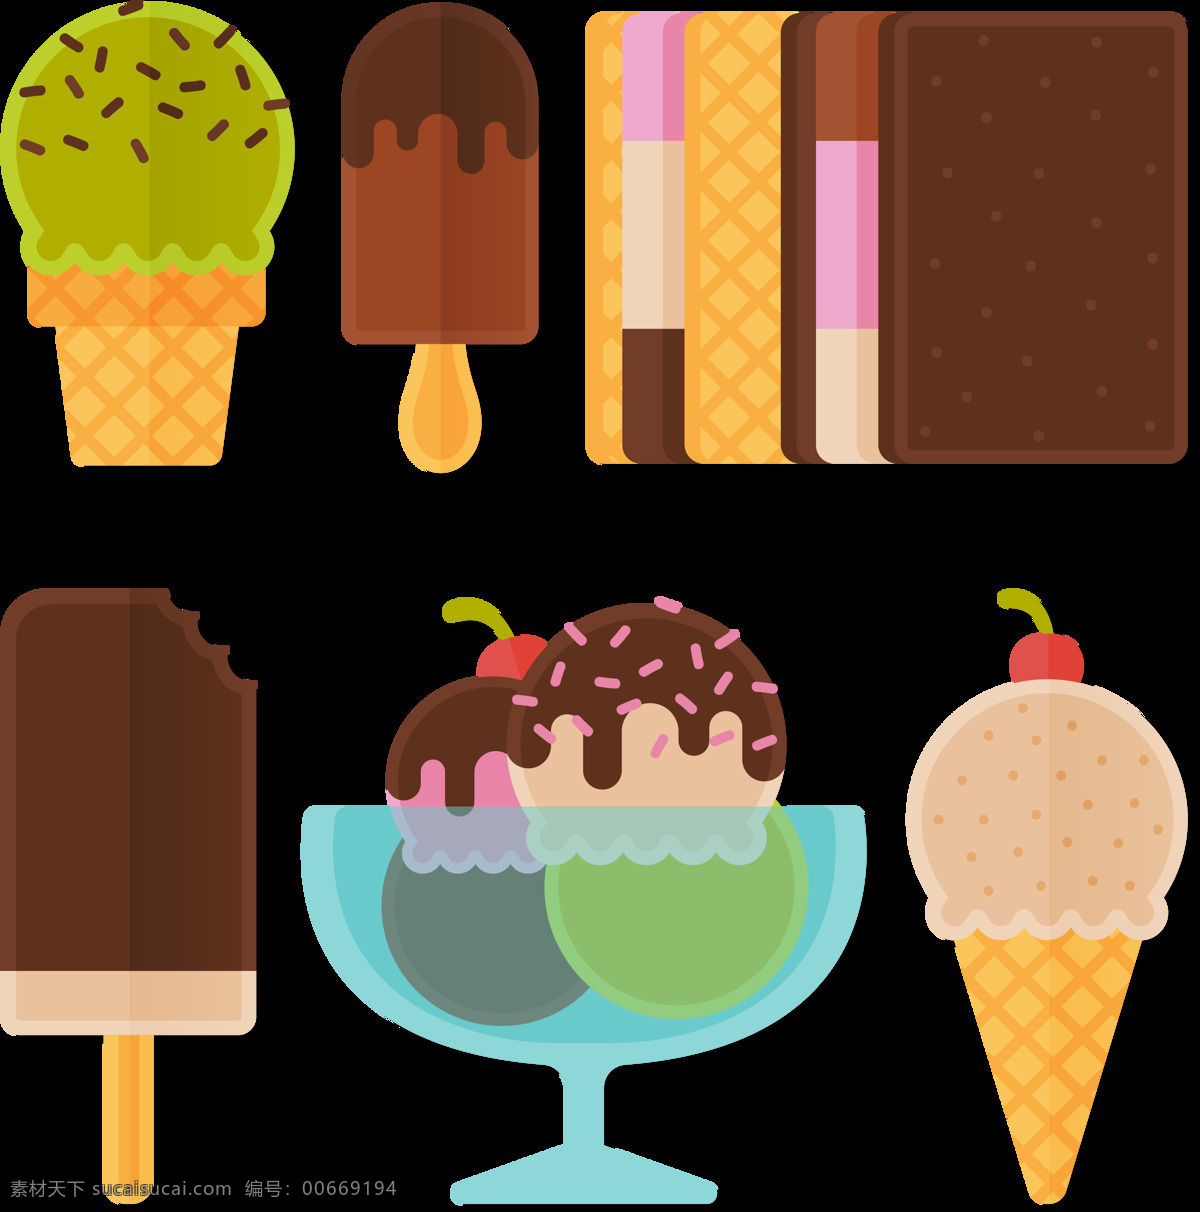 手绘 彩色 冰淇淋 雪糕 免 抠 透明 图 层 甜品图标 冷饮插图 清凉甜品 冰淇淋标志 雪糕图标 冰激凌图标 冰激凌插图 卡通冰淇淋 手绘冰淇淋 雪糕图案 冰淇淋促销 冰淇淋素材